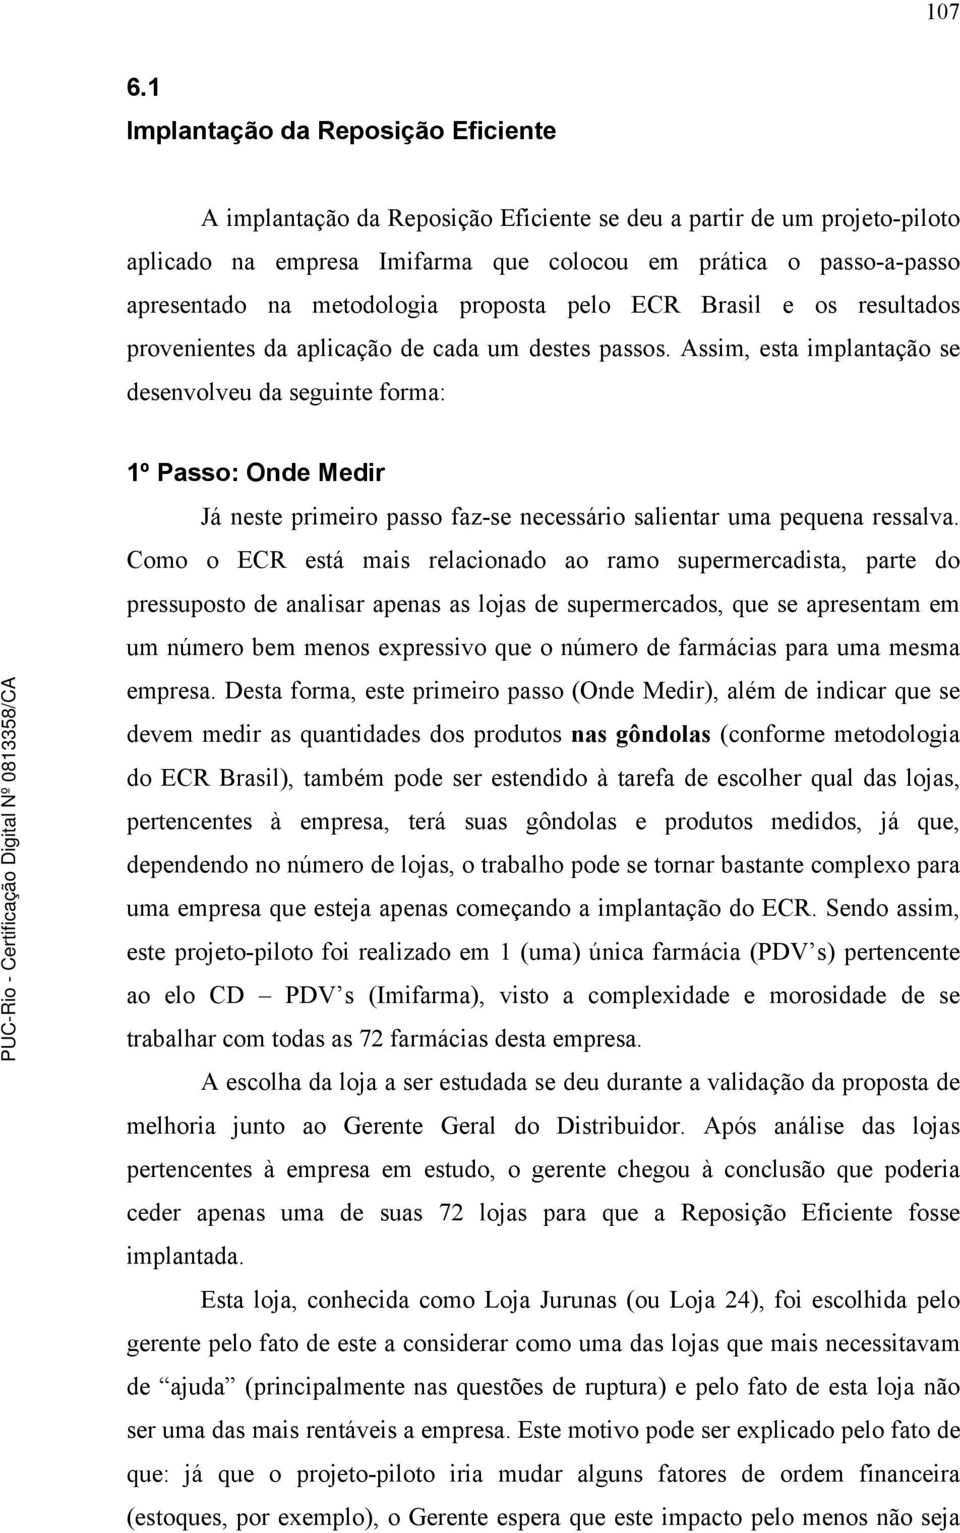 metodologia proposta pelo ECR Brasil e os resultados provenientes da aplicação de cada um destes passos.